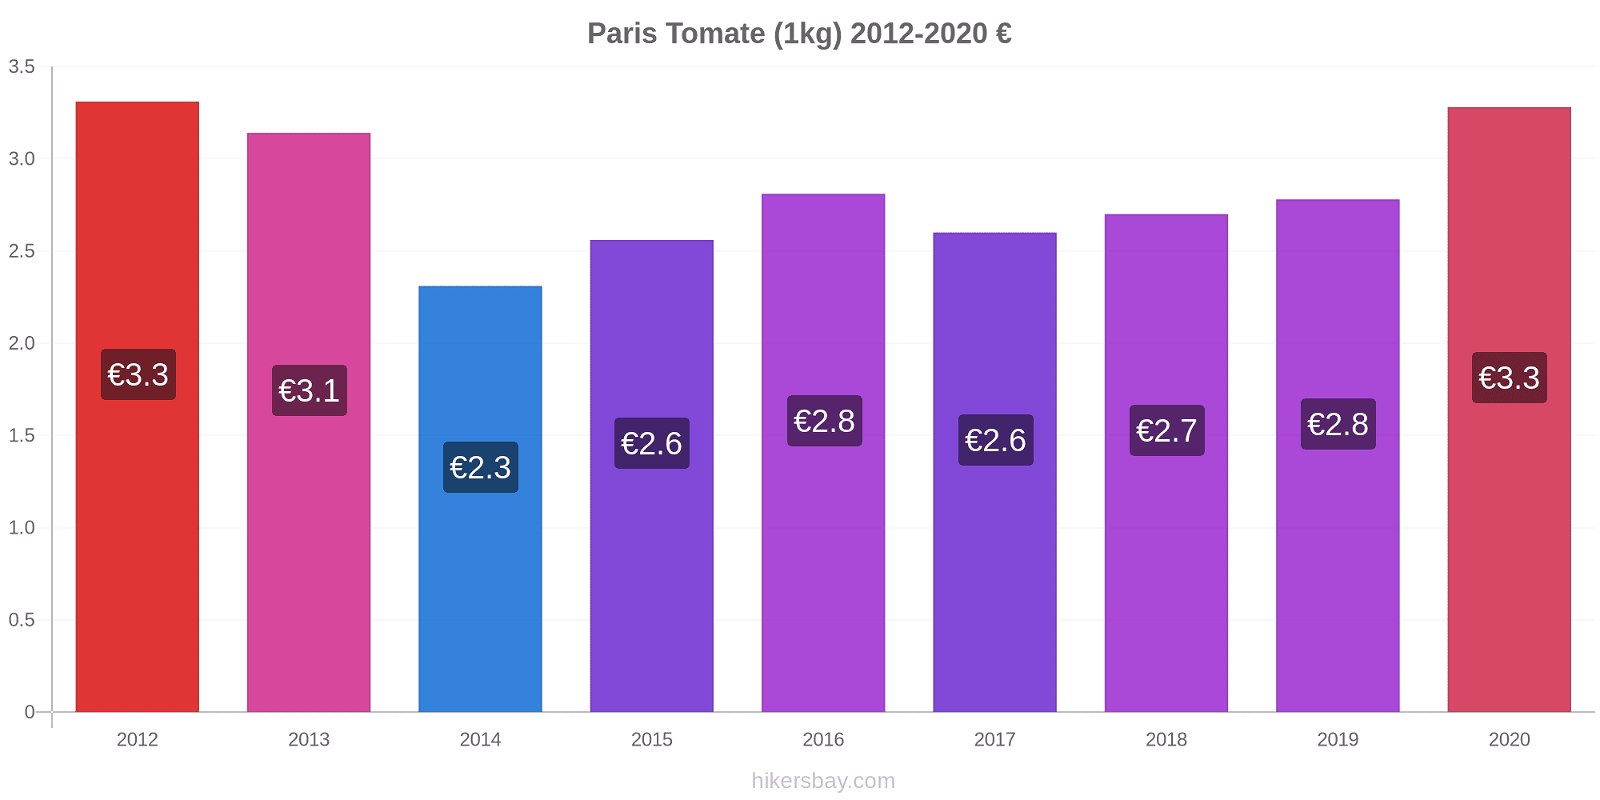 Paris variação de preço Tomate (1kg) hikersbay.com